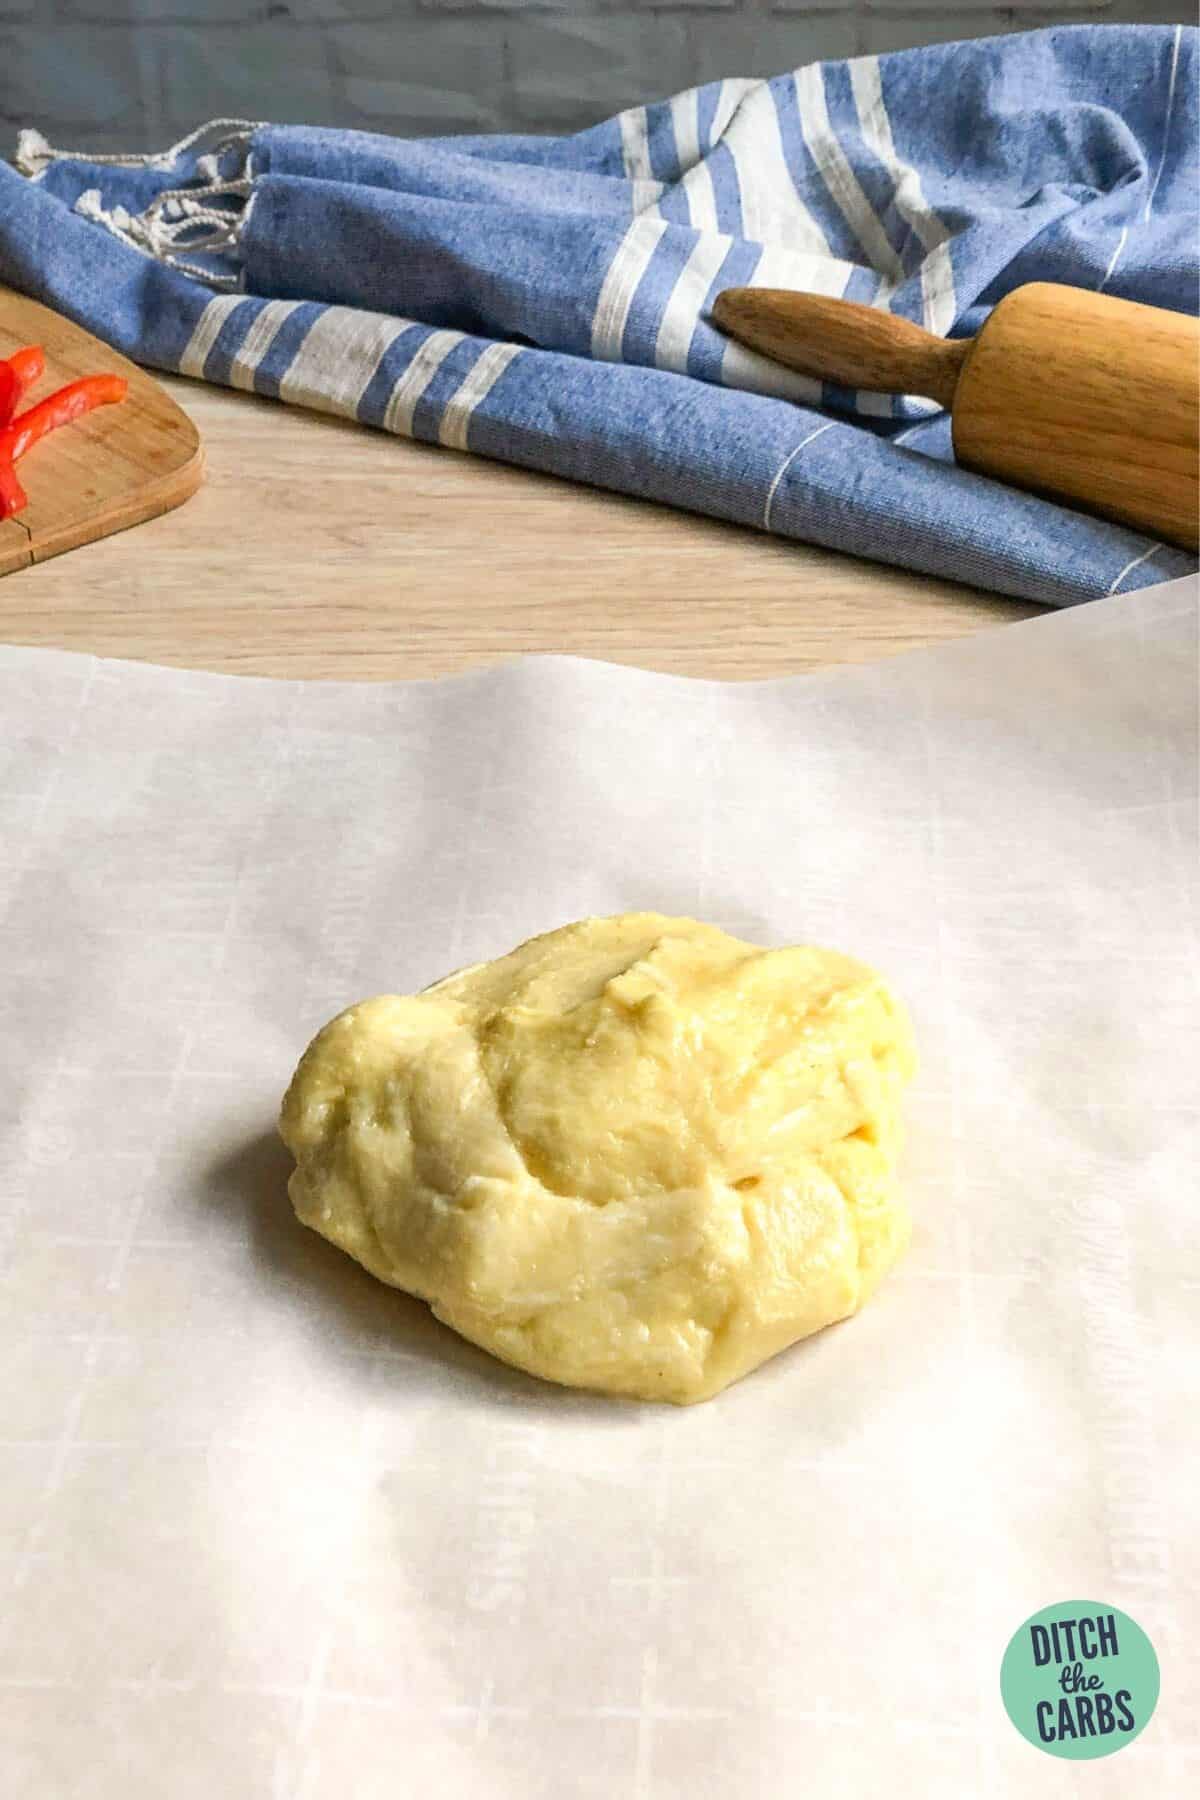 mozzarella dough ball on a baking tray